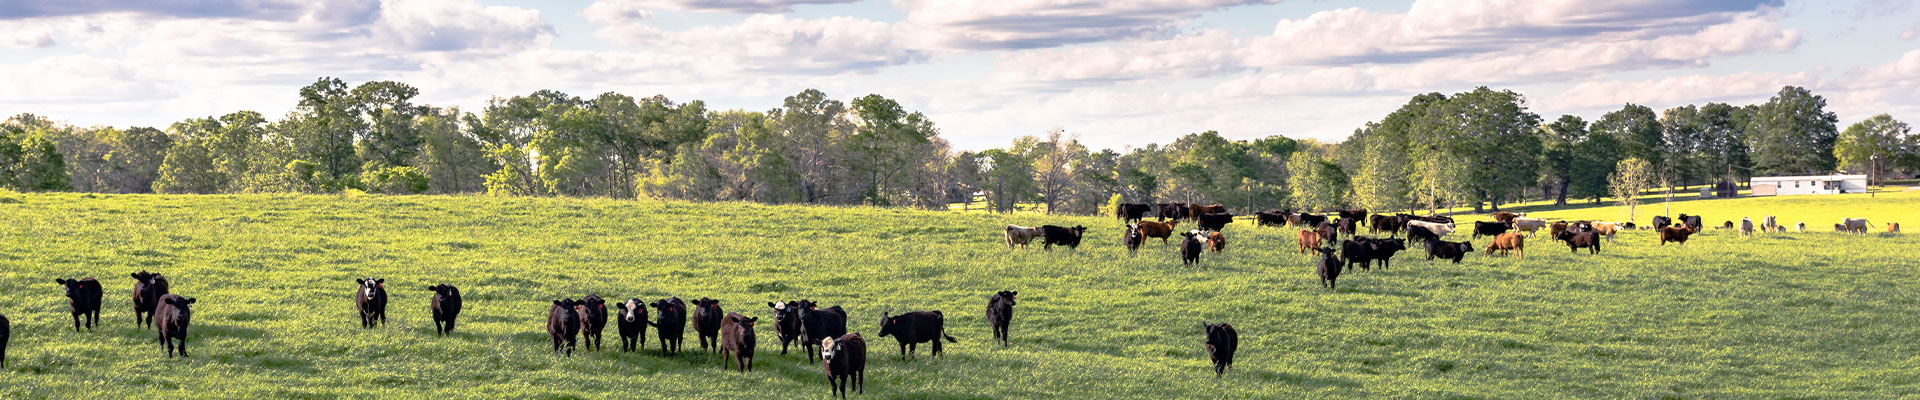 Alabama Cow Field